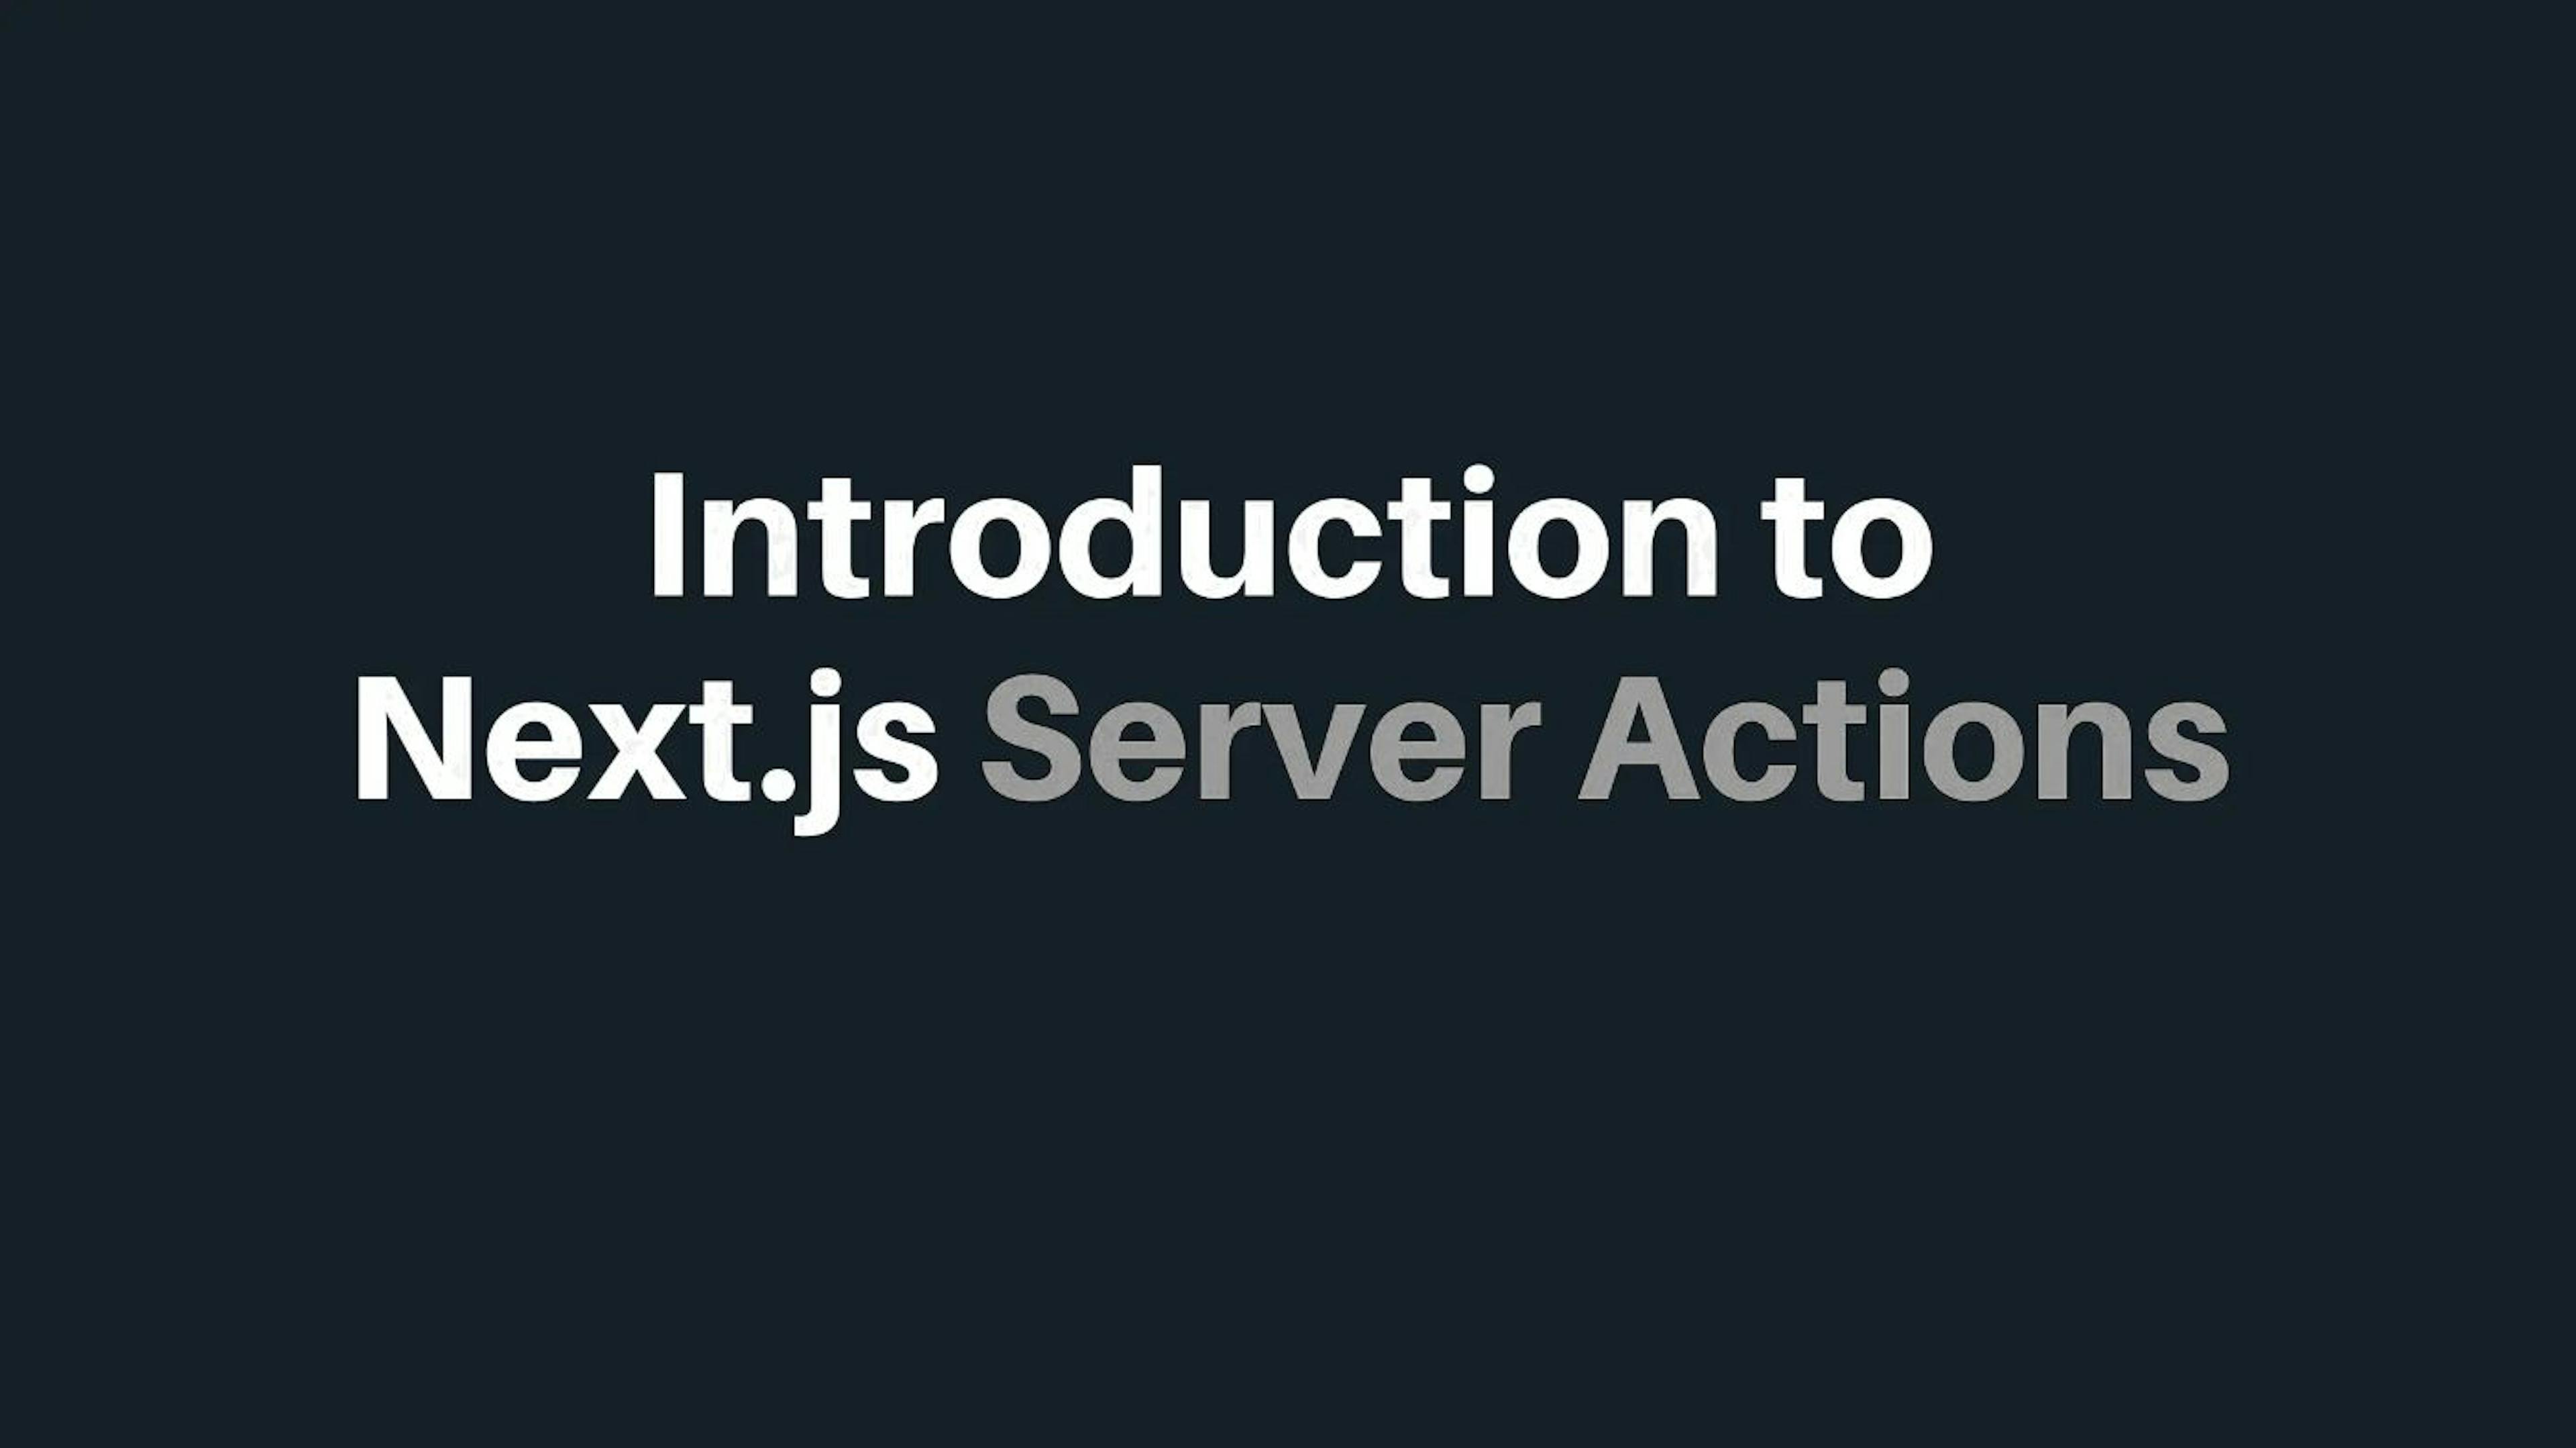 featured image - Création d'applications en temps réel avec Next.js 13.4 Server Actions

 1. Introduction](#...